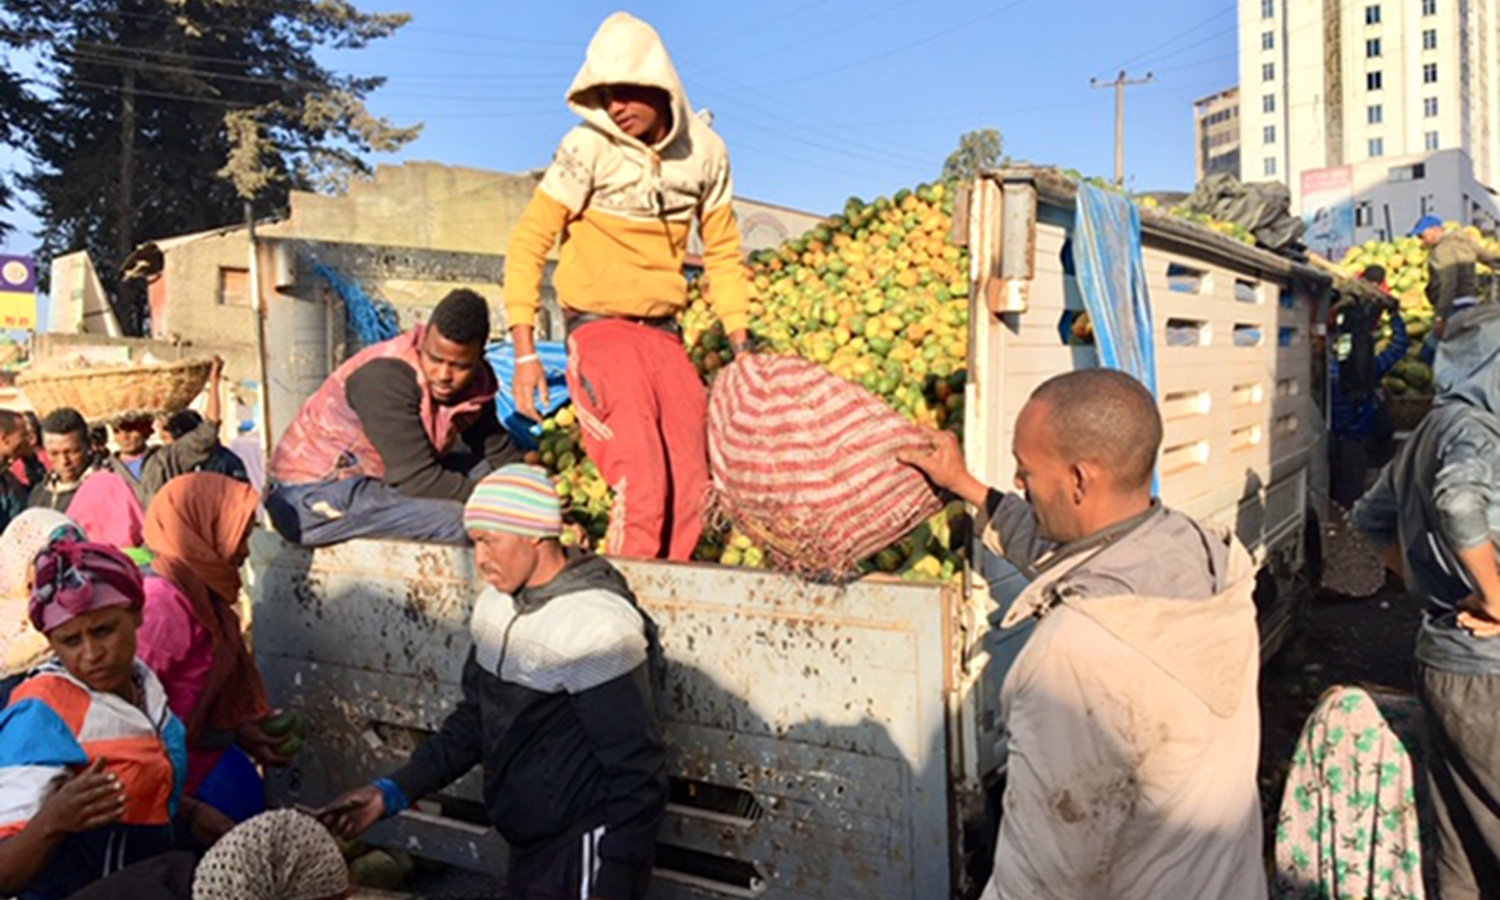 食品冷藏在埃塞俄比亚是主要用于出口,而不是喂养自己的(照片由佩顿弗莱明)